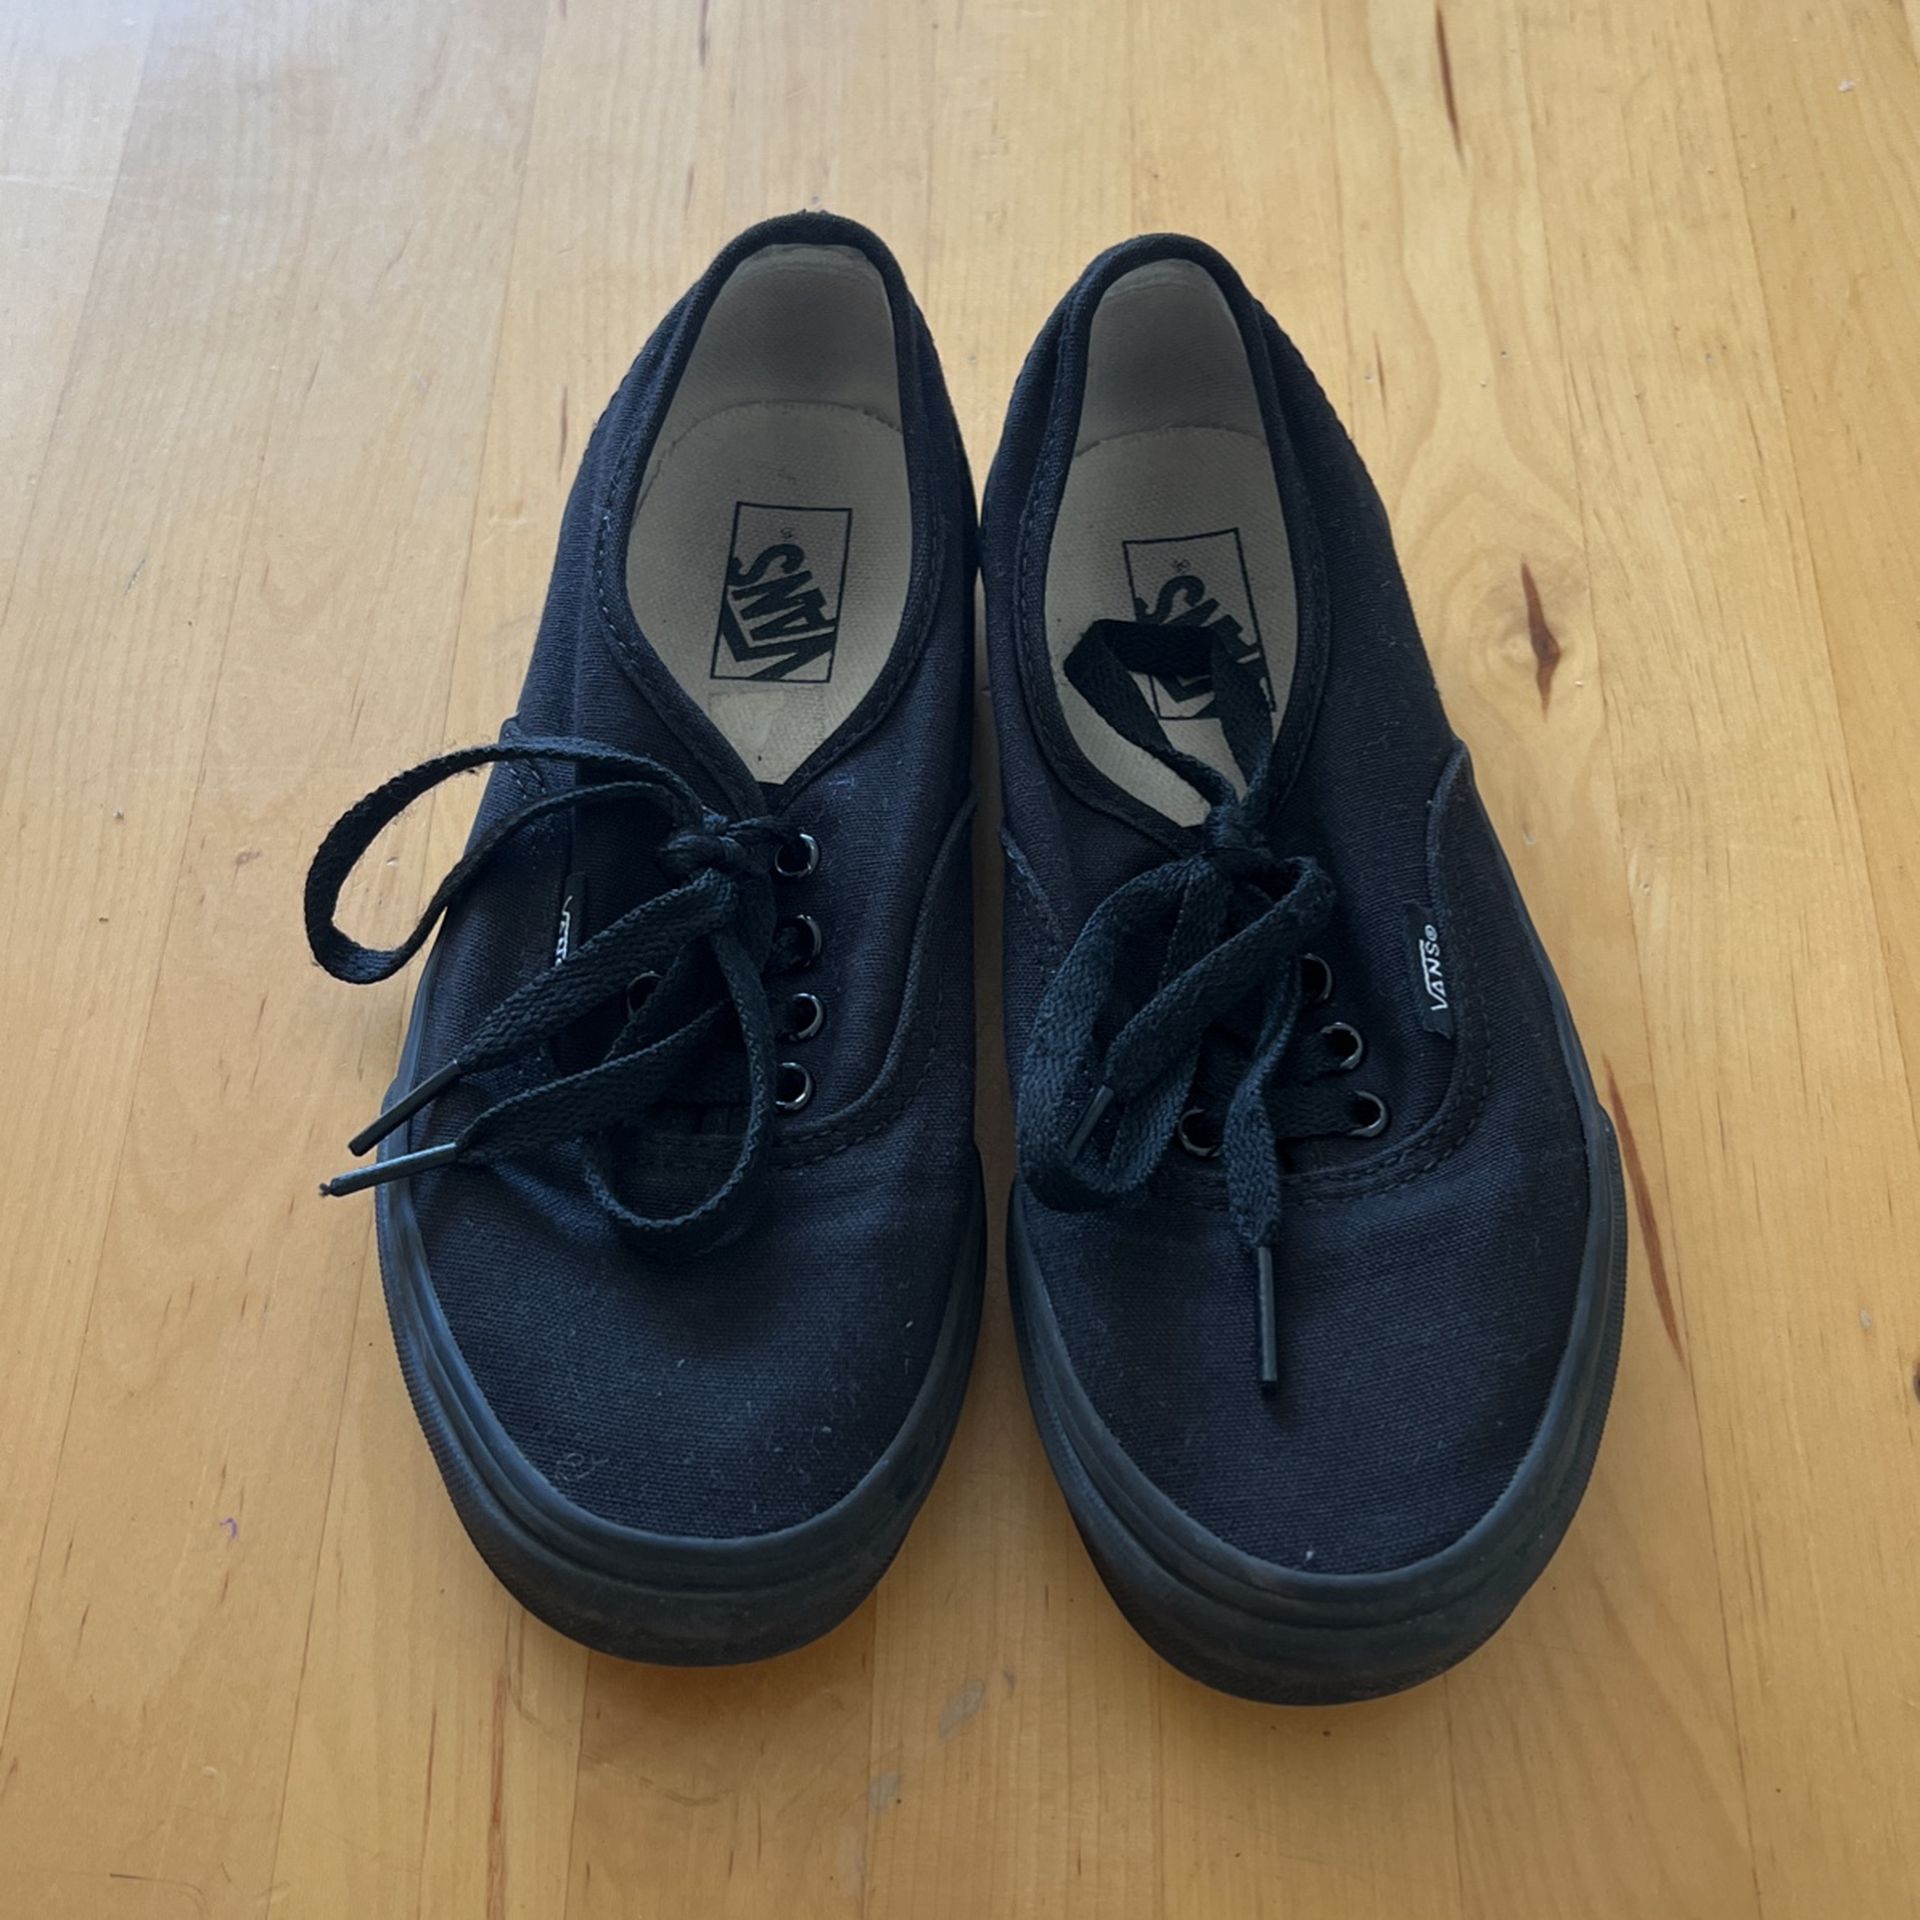 Kid’s Vans Shoes - Size 3